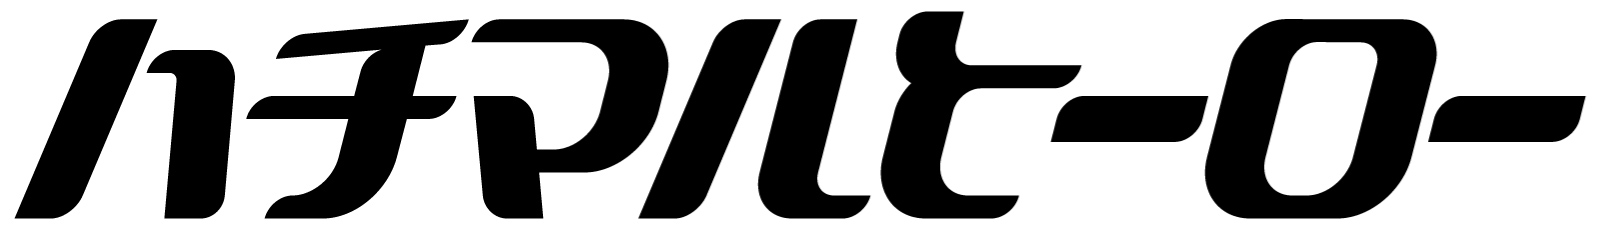 80年代･90年代の旧車雑誌 ハチマルヒーロー ロゴ